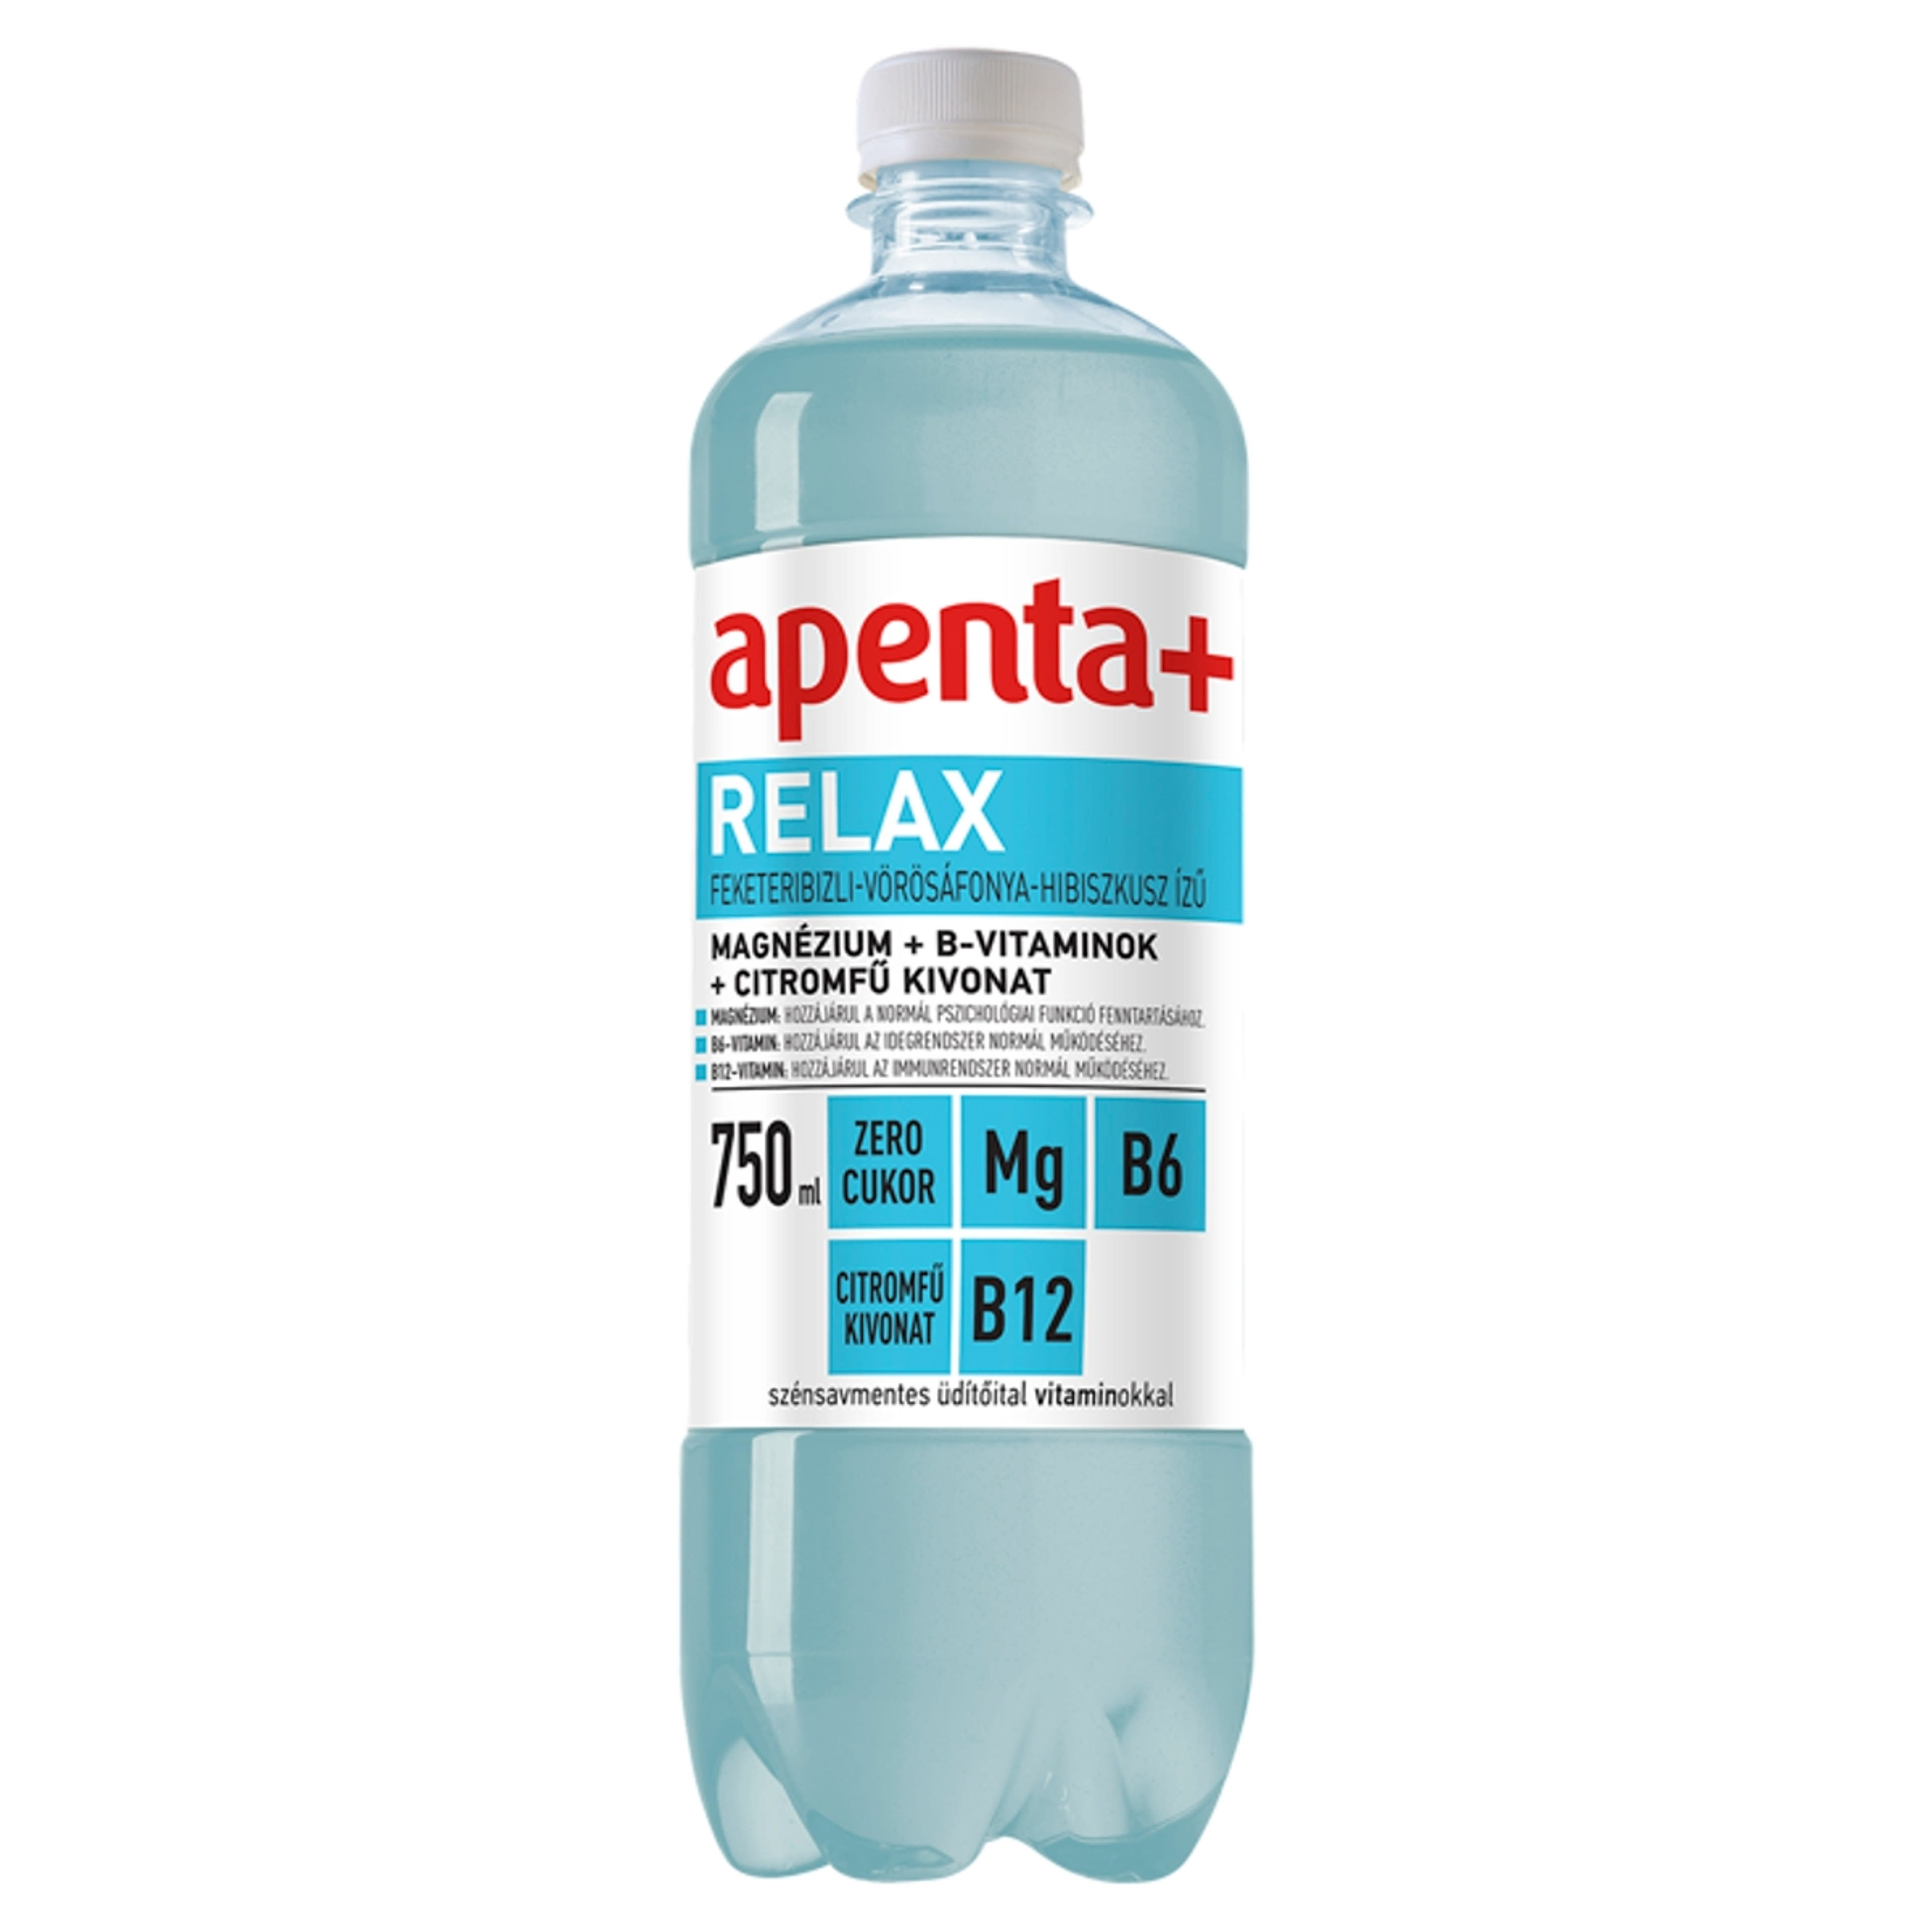 Apenta+ Relax üdítőital feketeribizli-vörösáfonya-hibiszkusz ízű - 750 ml